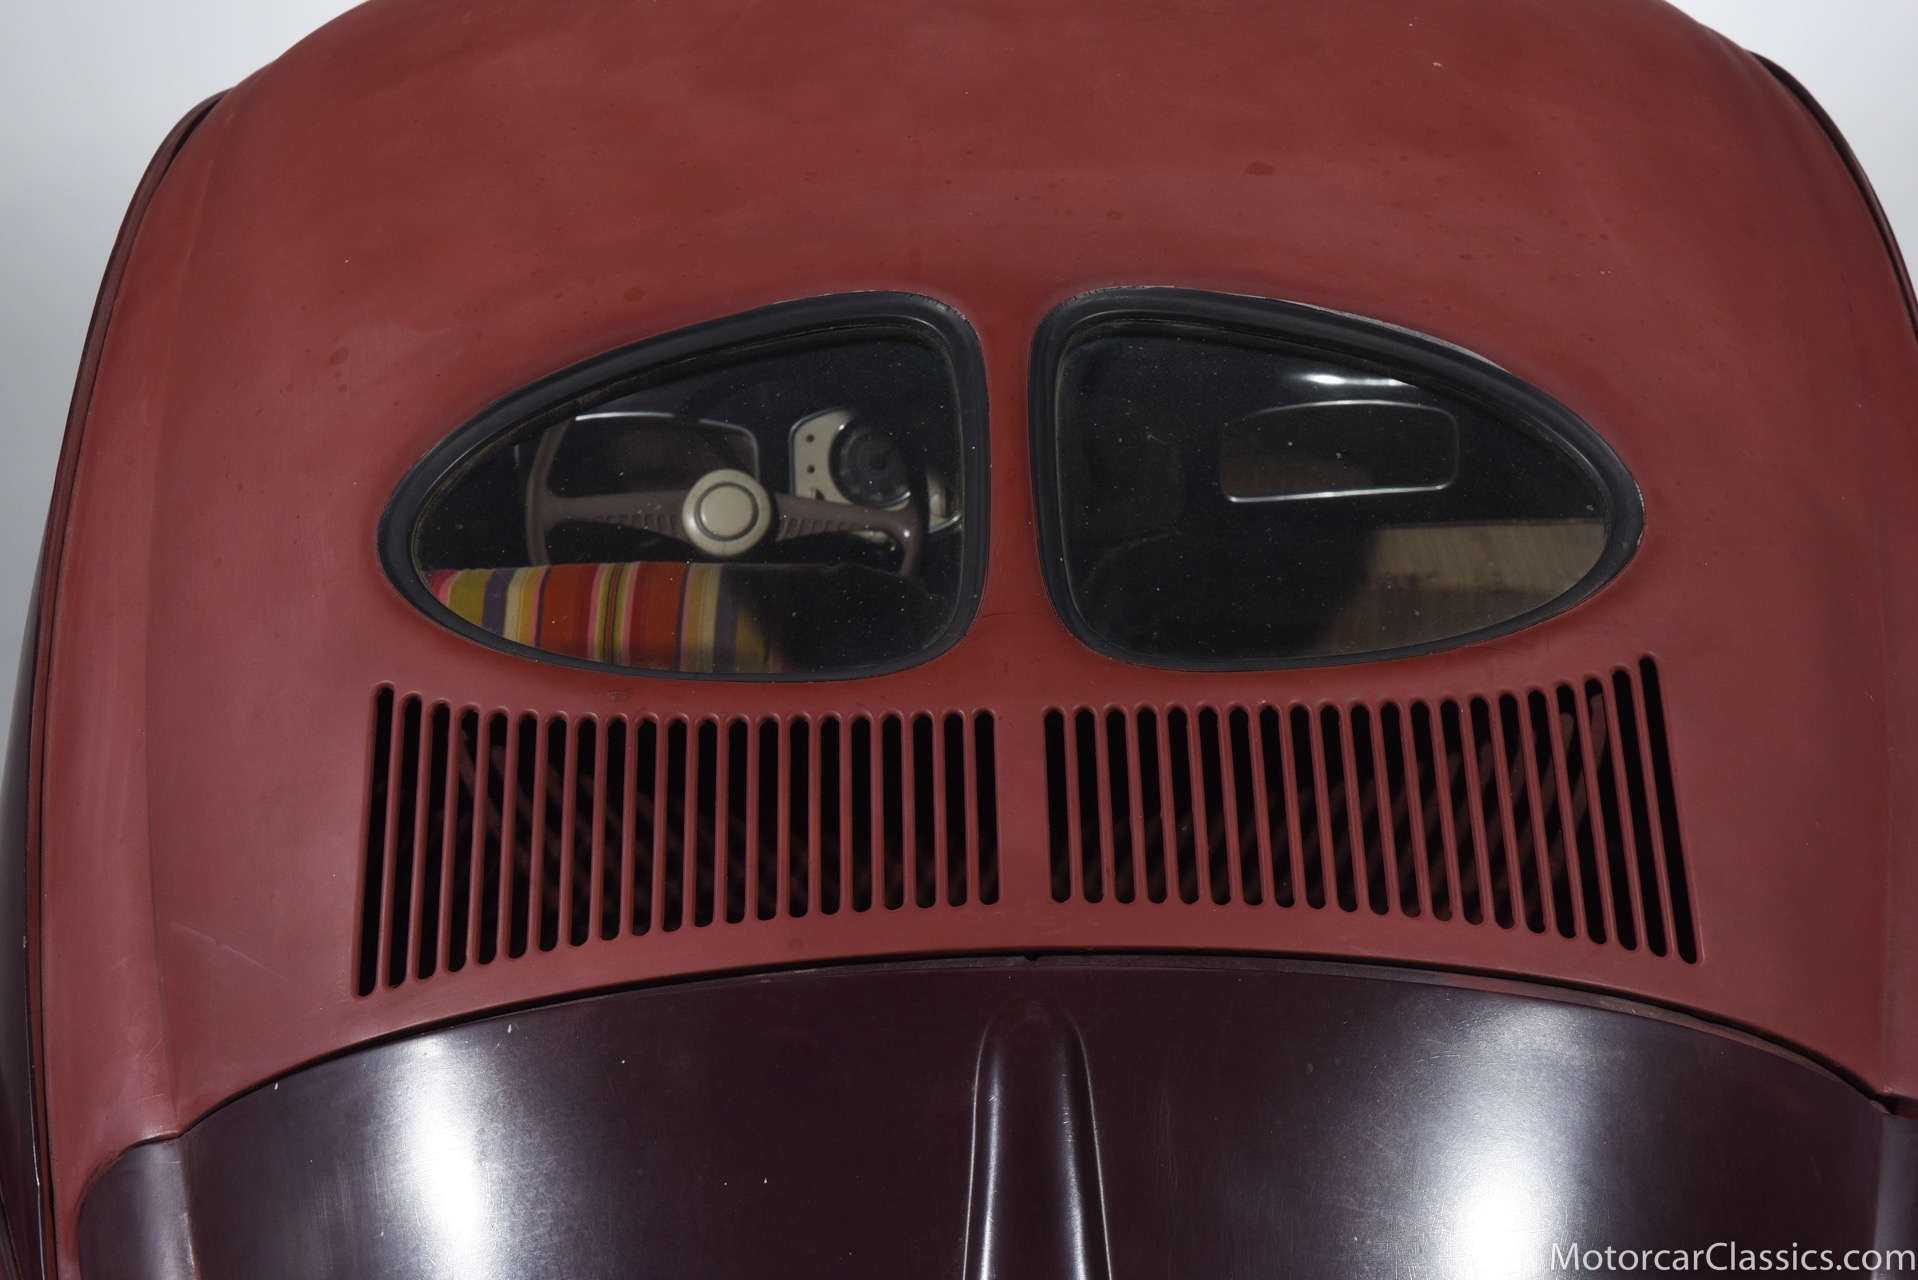 1950 Volkswagen Beetle Cabriolet